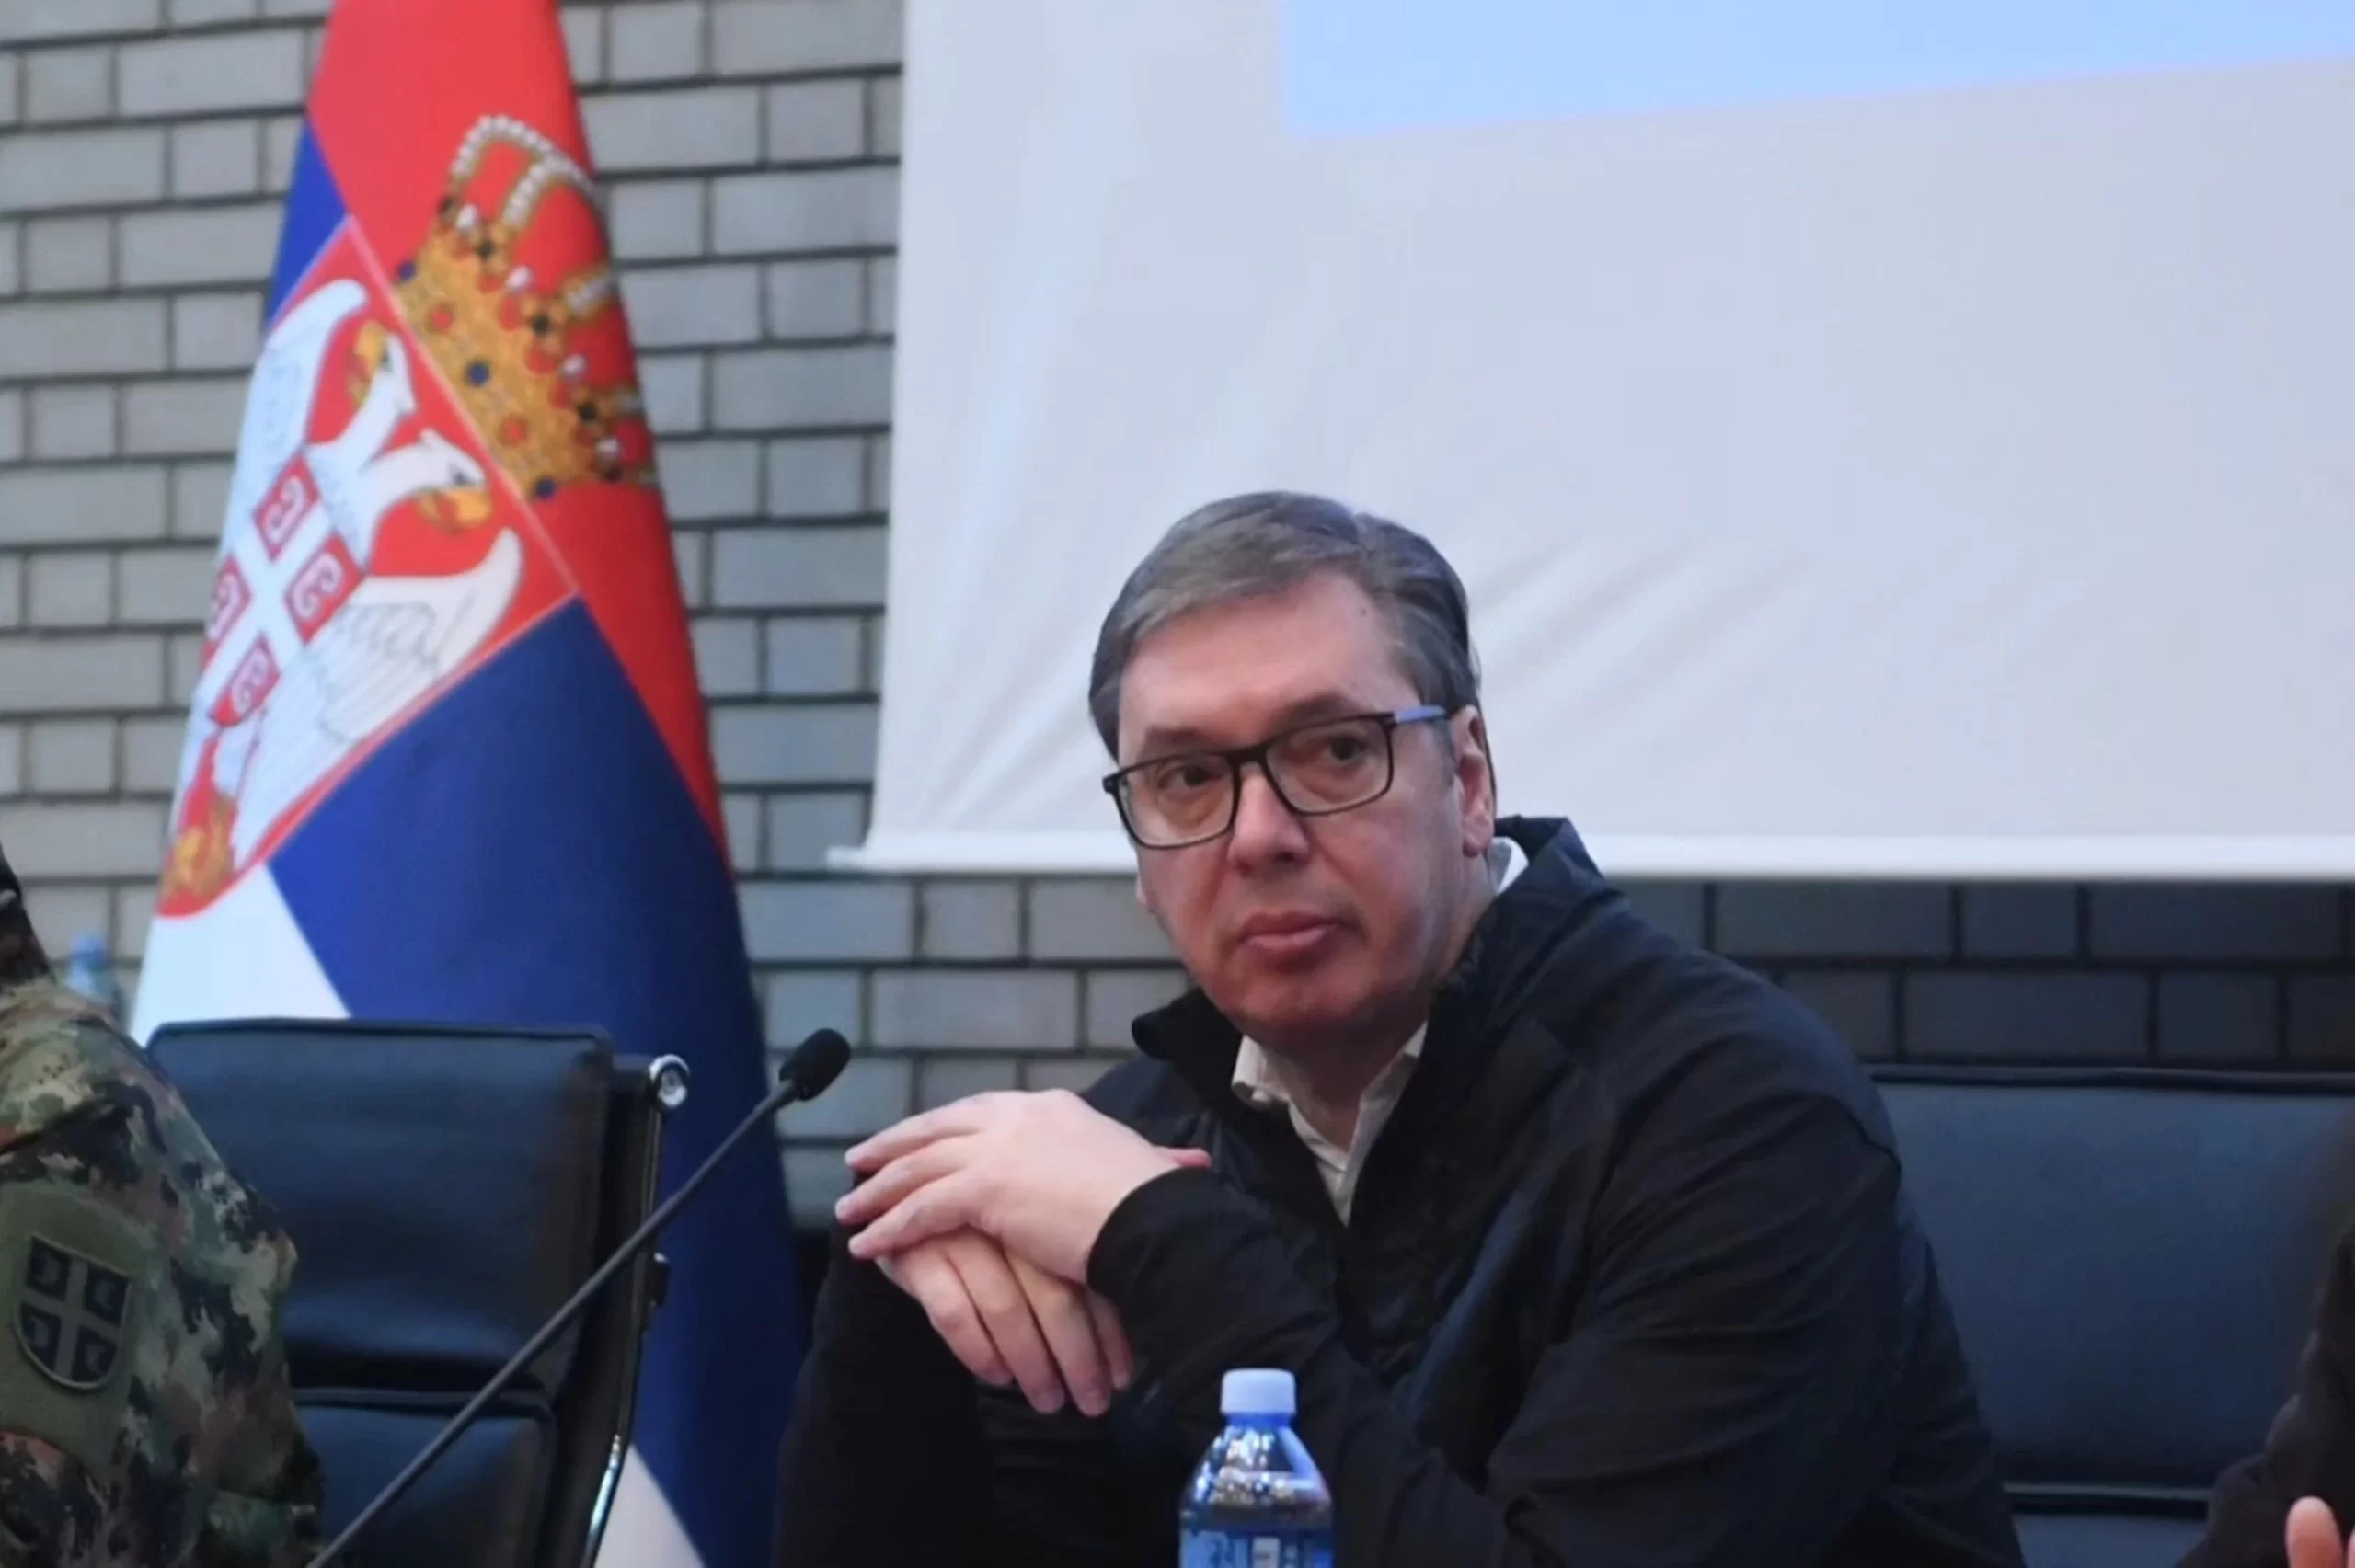 Ανησυχία μετά την δήλωση Βούτσιτς ότι έλαβε άσχημα νέα για την Σερβία και την Δημοκρατία της Σέρπσκα